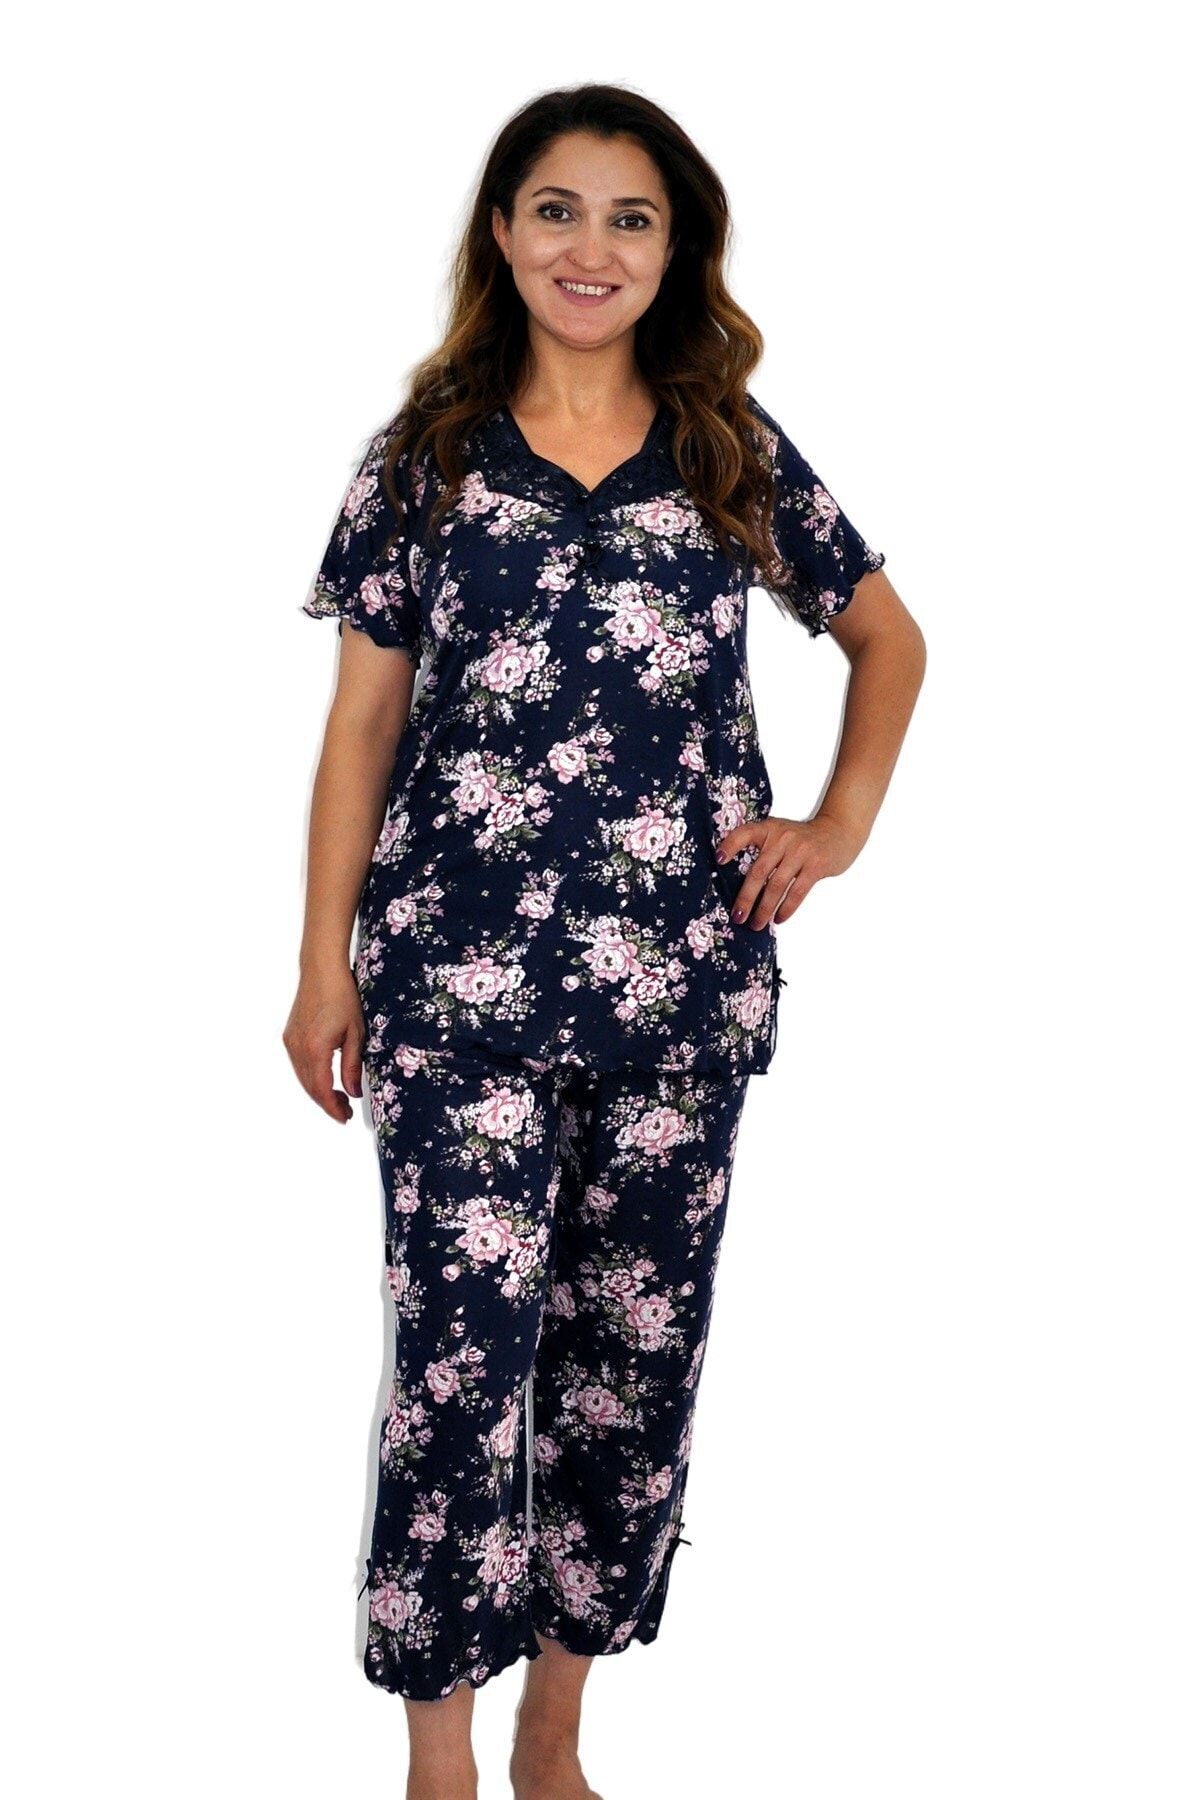 Dükkan Moda Kadın Büyük Beden Pijama Pembe Çiçek Desenli